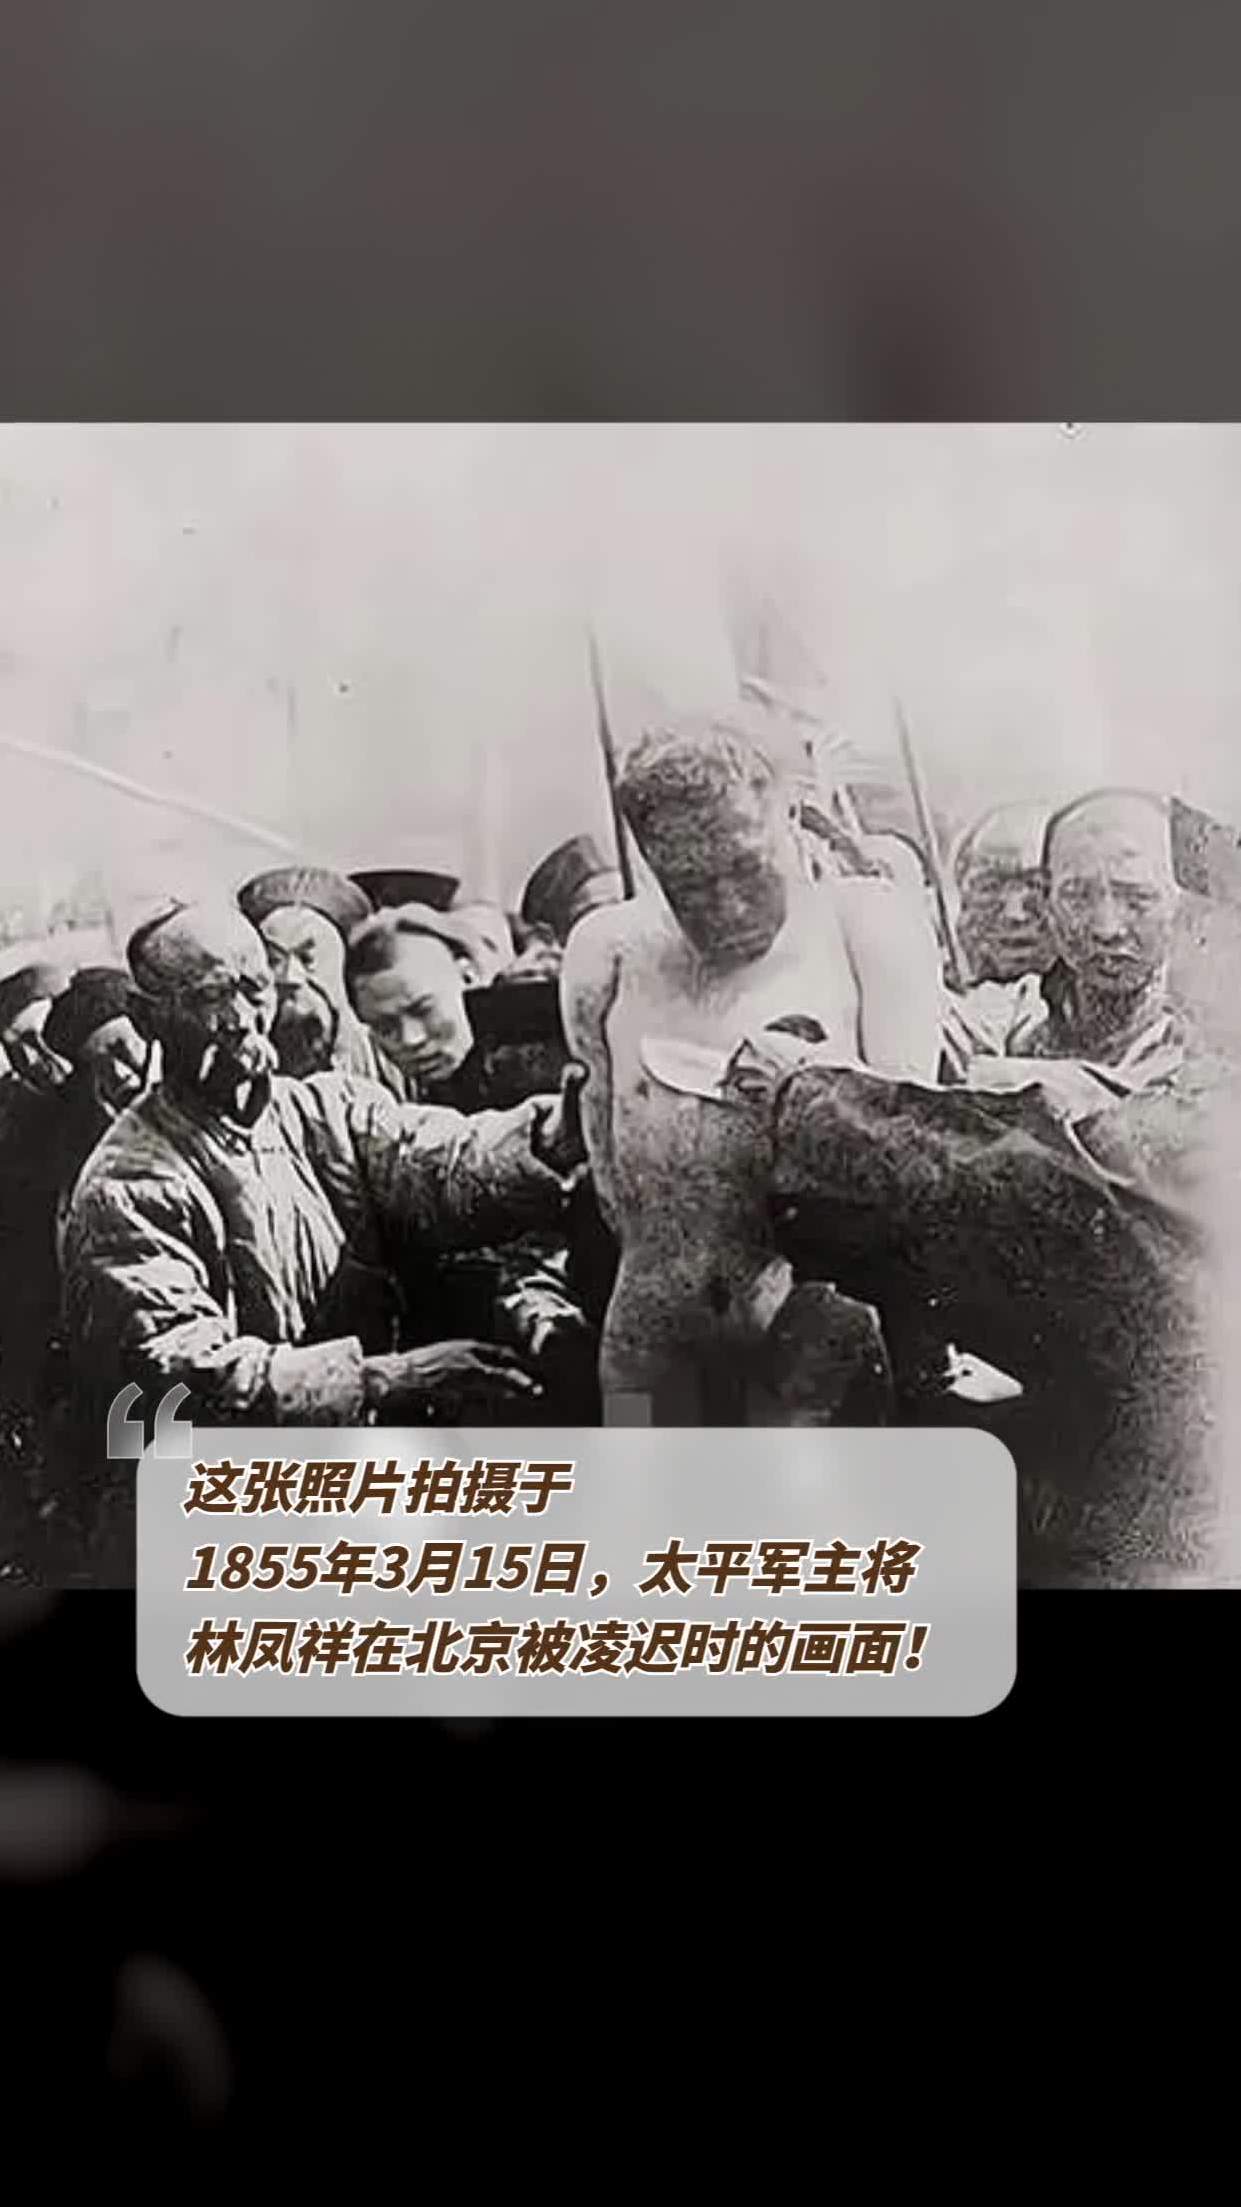 这张照片拍摄于1855年3月15日,太平军主将林凤祥在北京被凌迟时的画面